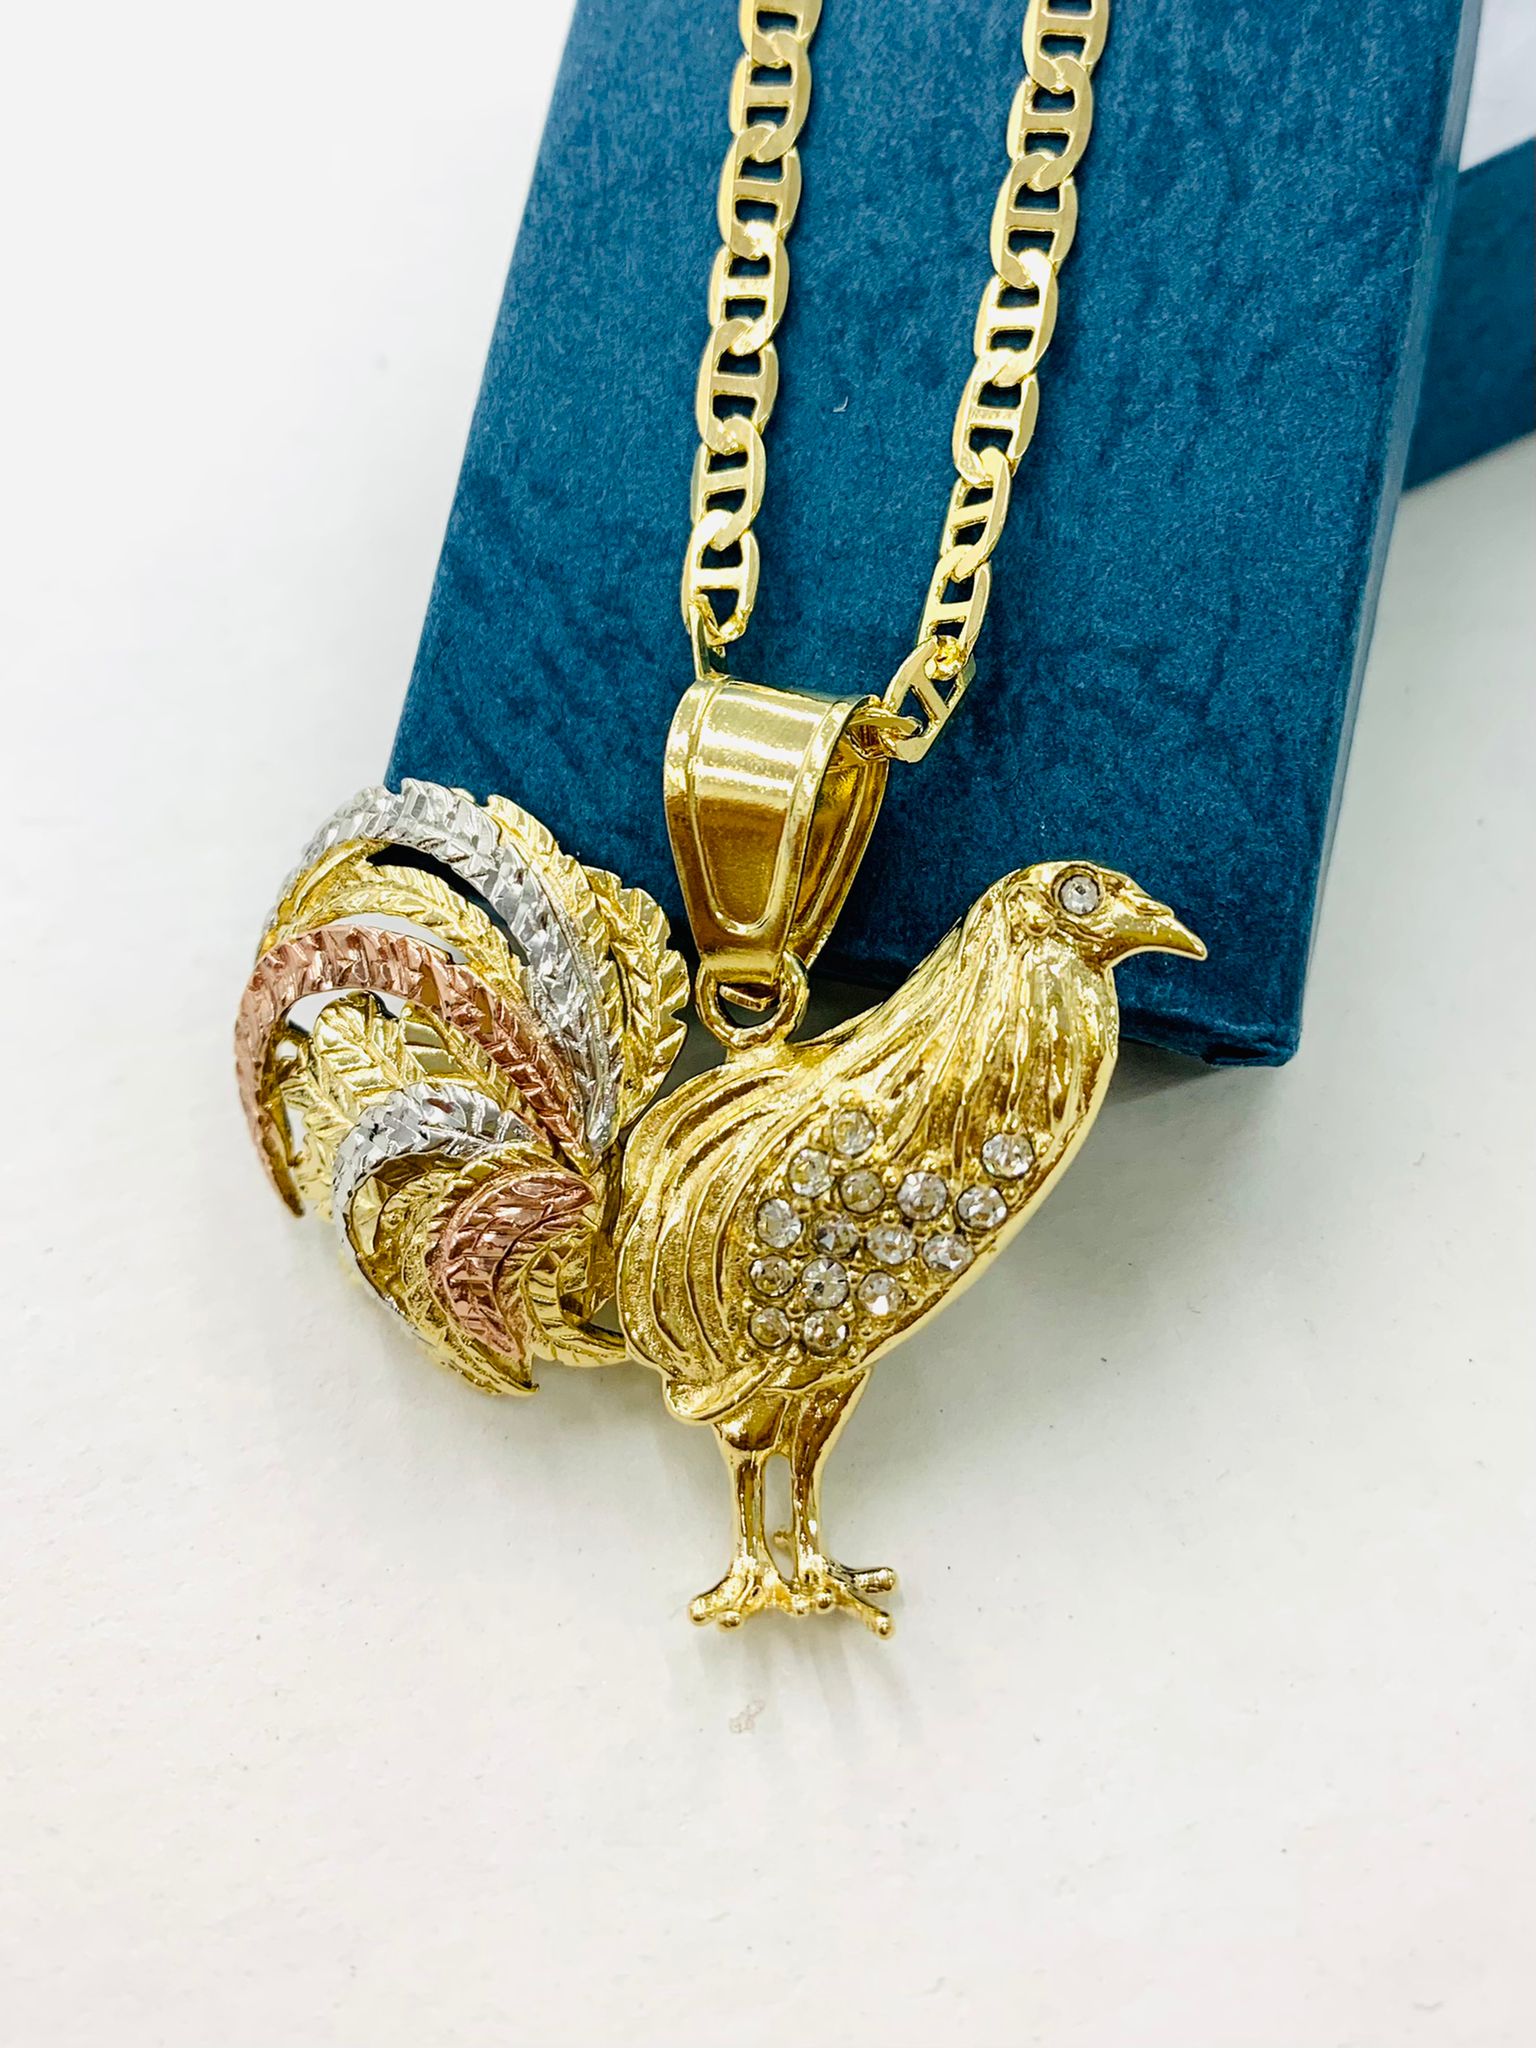 Rooster Chicken 18K Gold Filled Pendant Charm Necklace Gallo Medalla  33x45mm Figaro Mariner Chain 24 Dije de Gallo para la Protección Oro